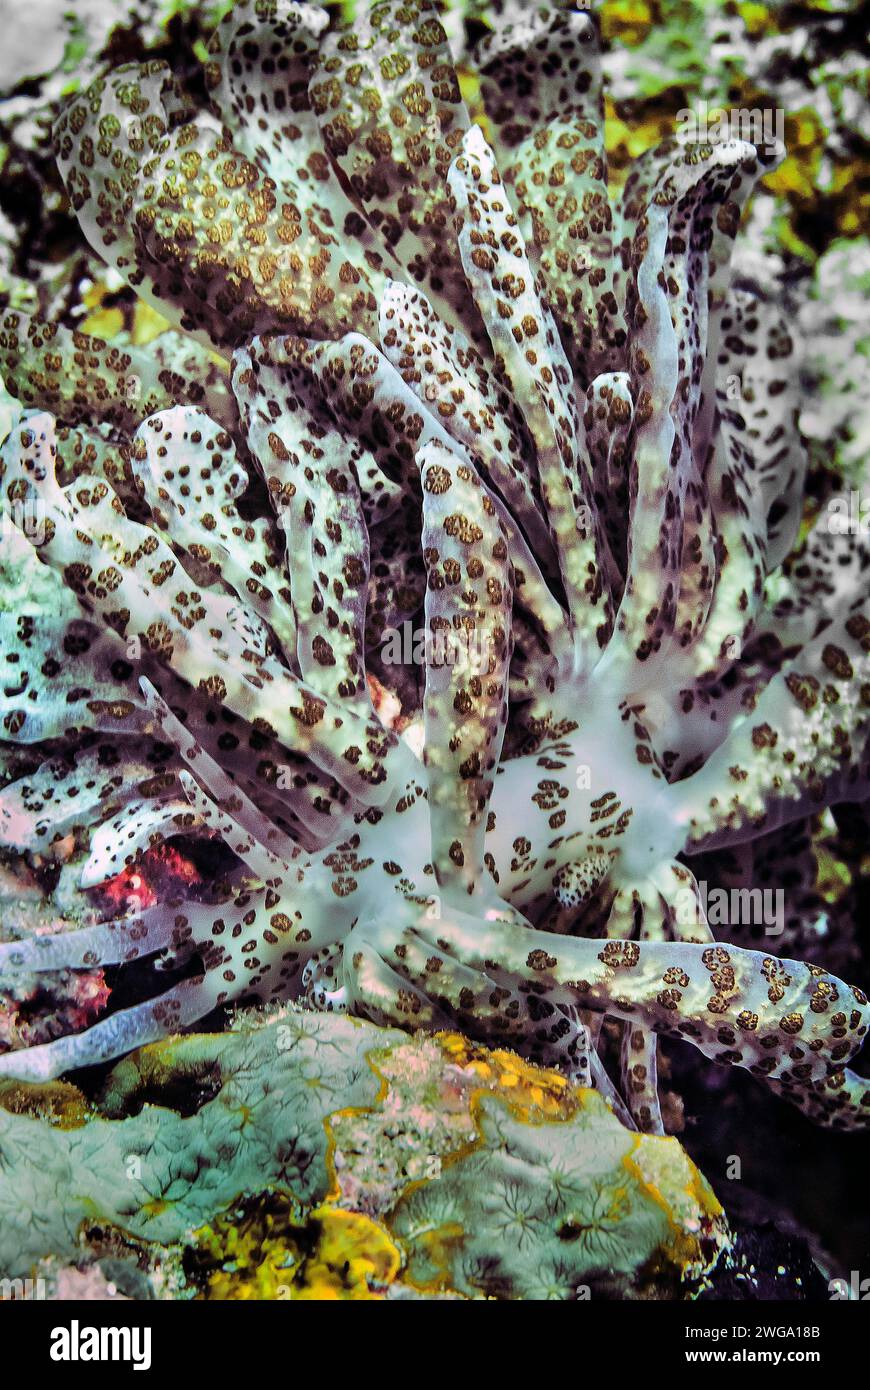 Cryptic phyllodesmium (Phyllodesmium crypticum), Wakatobi Dive Resort, Sulawesi, Indonesia Stock Photo